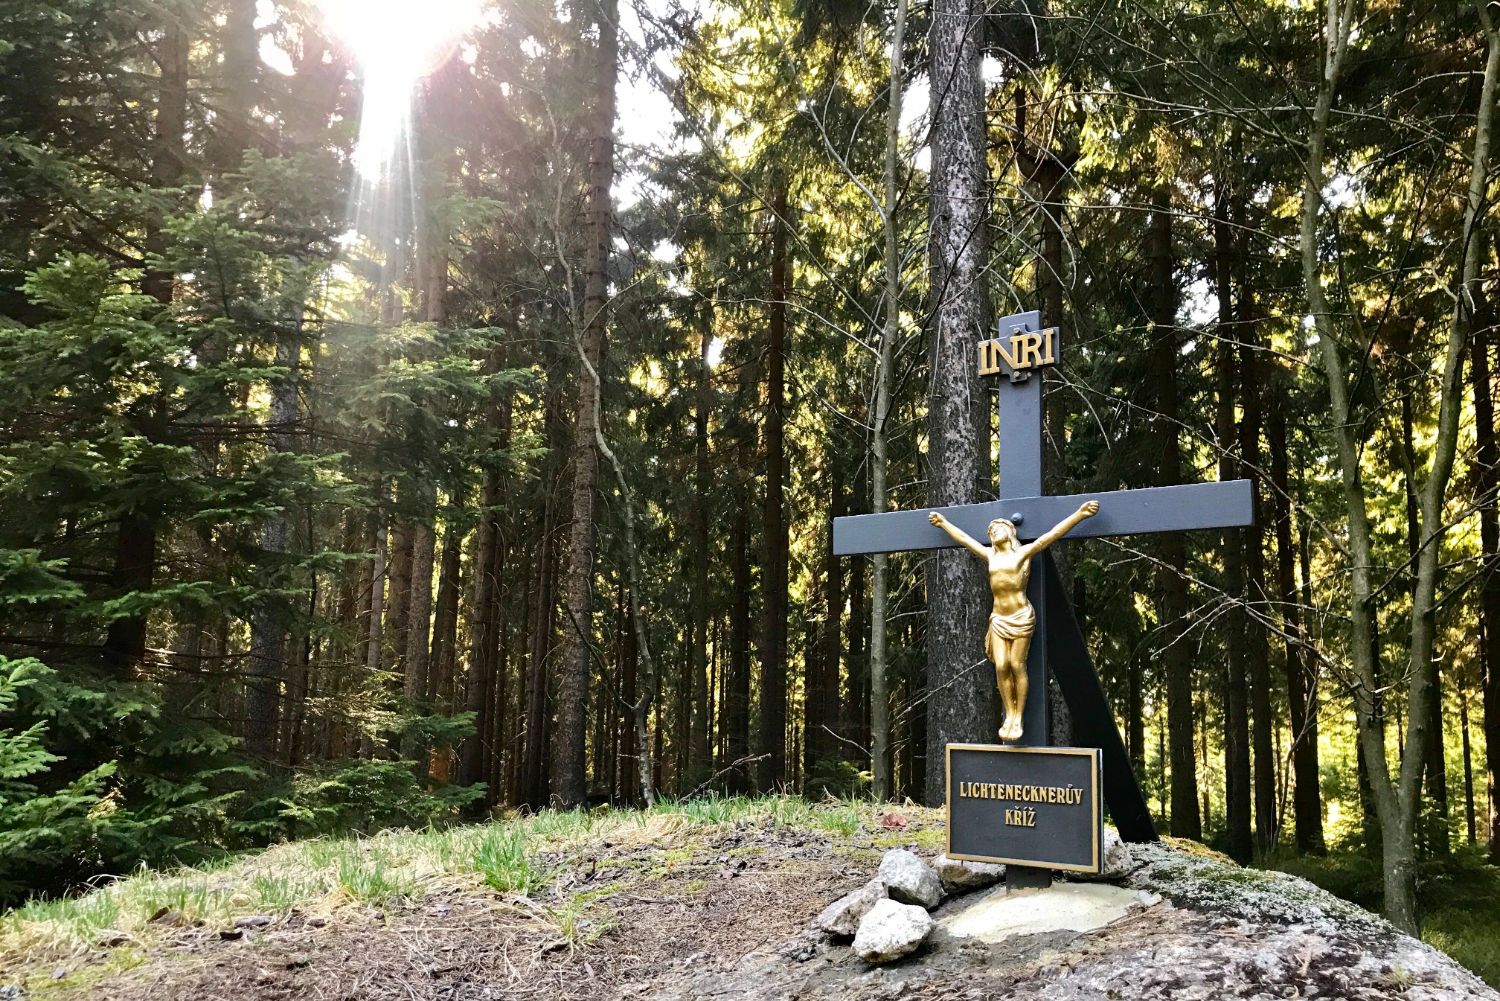 Obnovený Lichtenecknerův kříž na Vládní cestě v Jizerských horách, který nechal postavit polesný Lichteneckner z vděčnosti, že se zachránil před nečistými mocnostmi při nočním návratu z hospody.